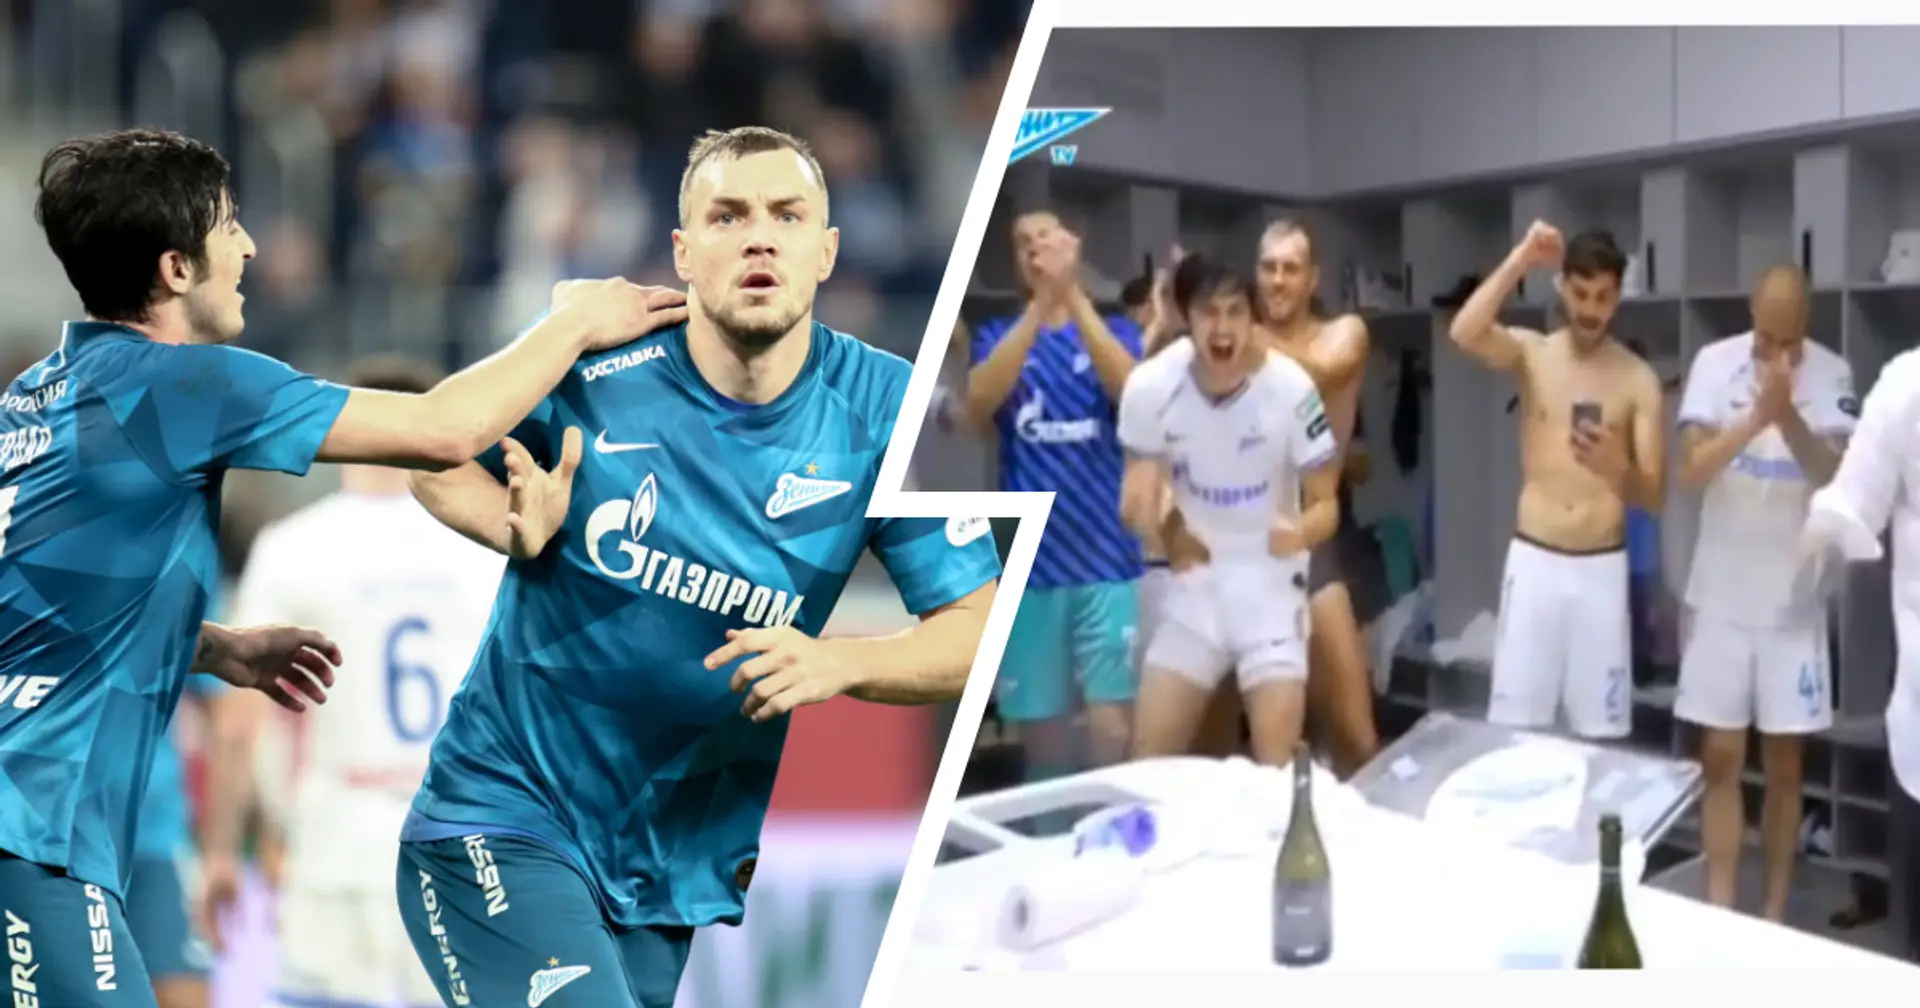 Russia captain Dzyuba hilariously imitates having sex with Zenit teammate Azmoun while celebrating title